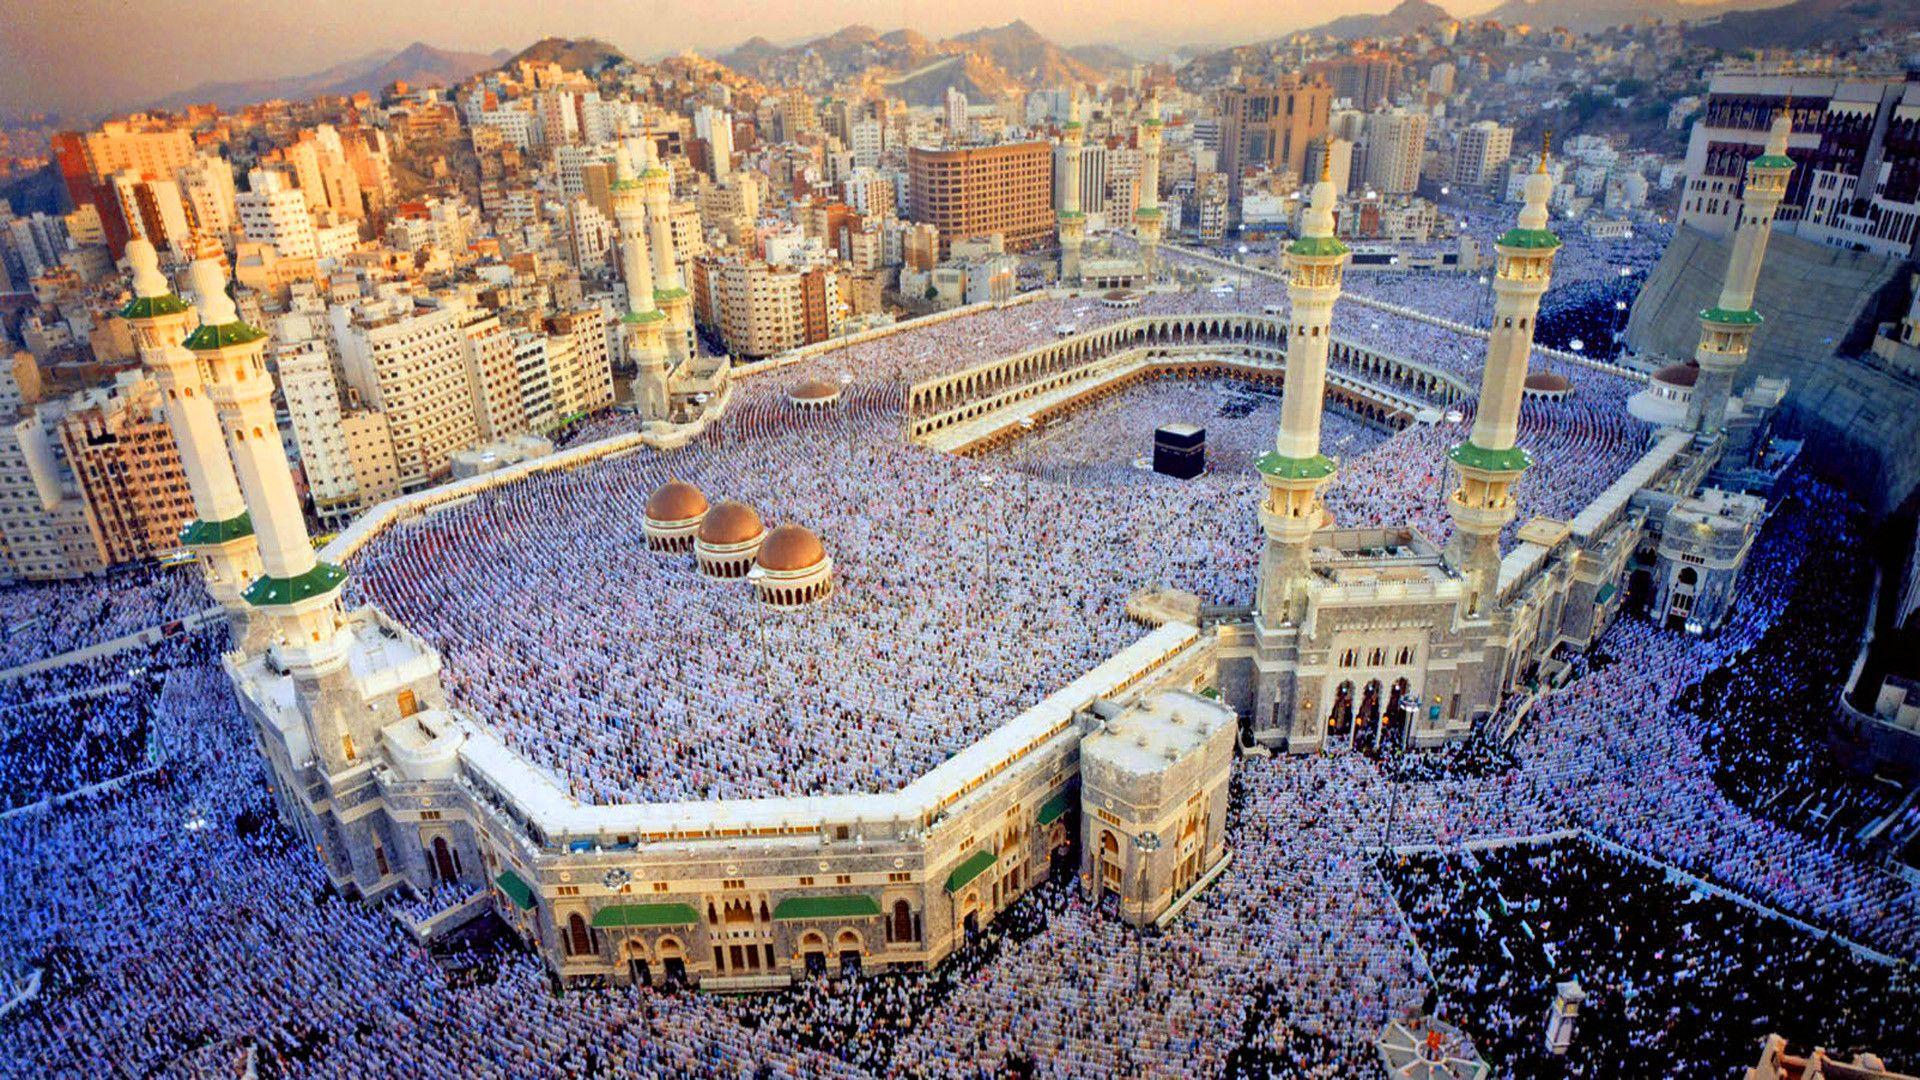 Священные города мусульман мекка и медина. Мечеть Аль-харам (Запретная мечеть), Мекка. Саудовская Аравия Мекка Кааба. Мечети Мекки и Медины. Масджид Аль-харам – Мекка, Саудовская Аравия.